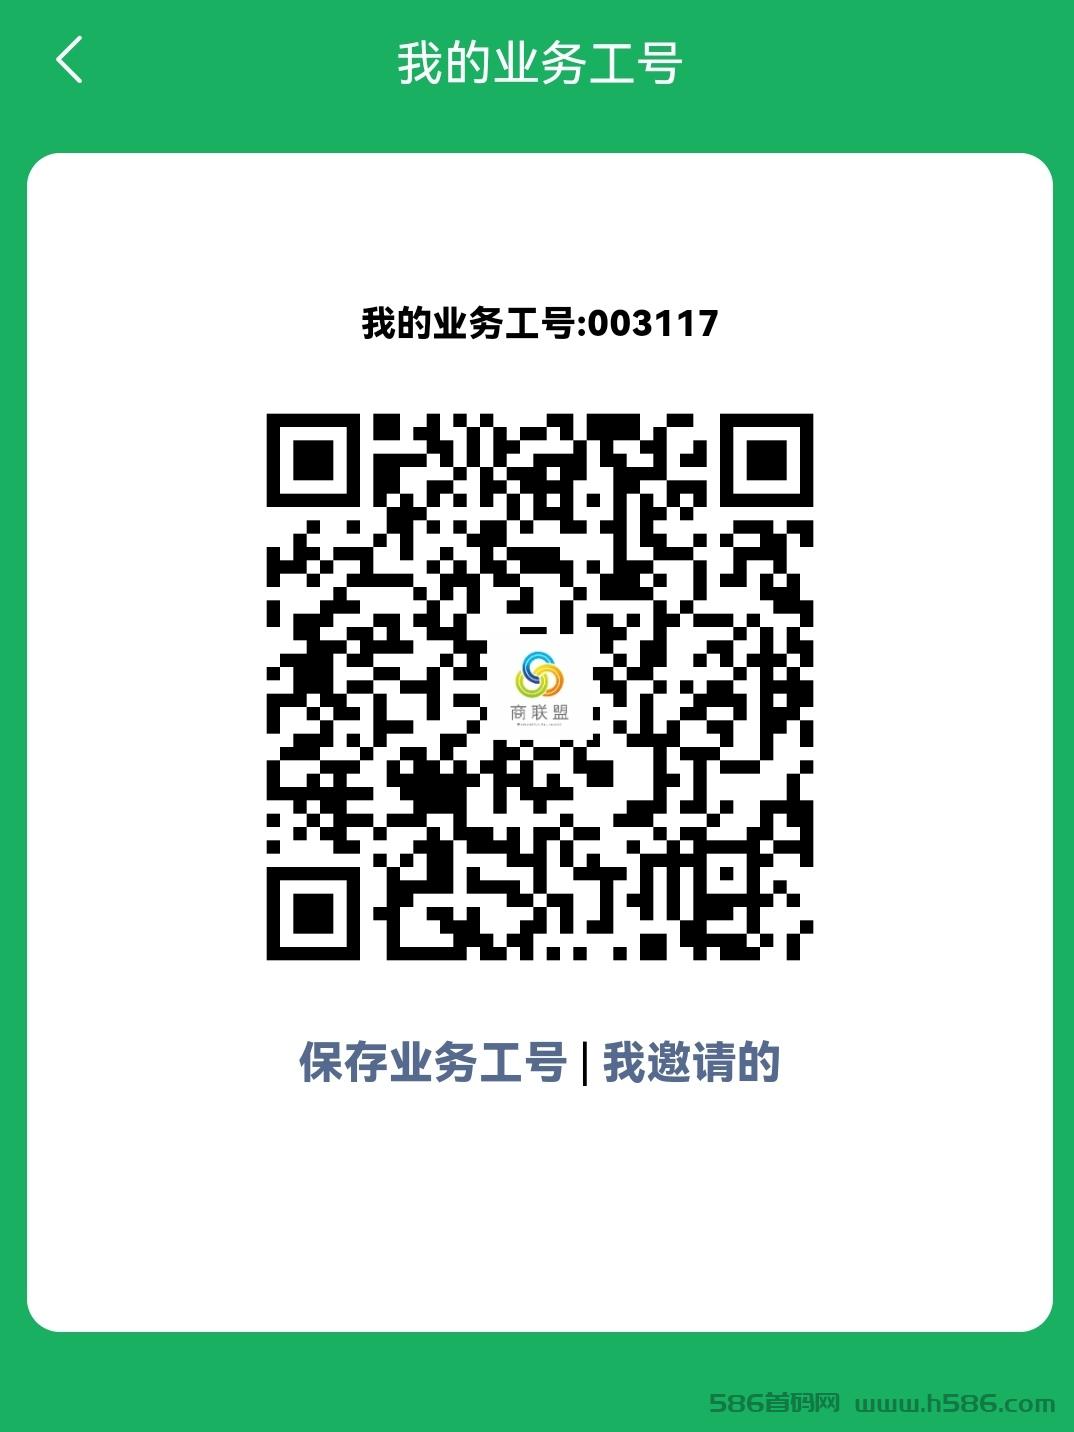 Screenshot_20221120_112259_com.shangjiafabu.app_edit_12186397907514.jpg